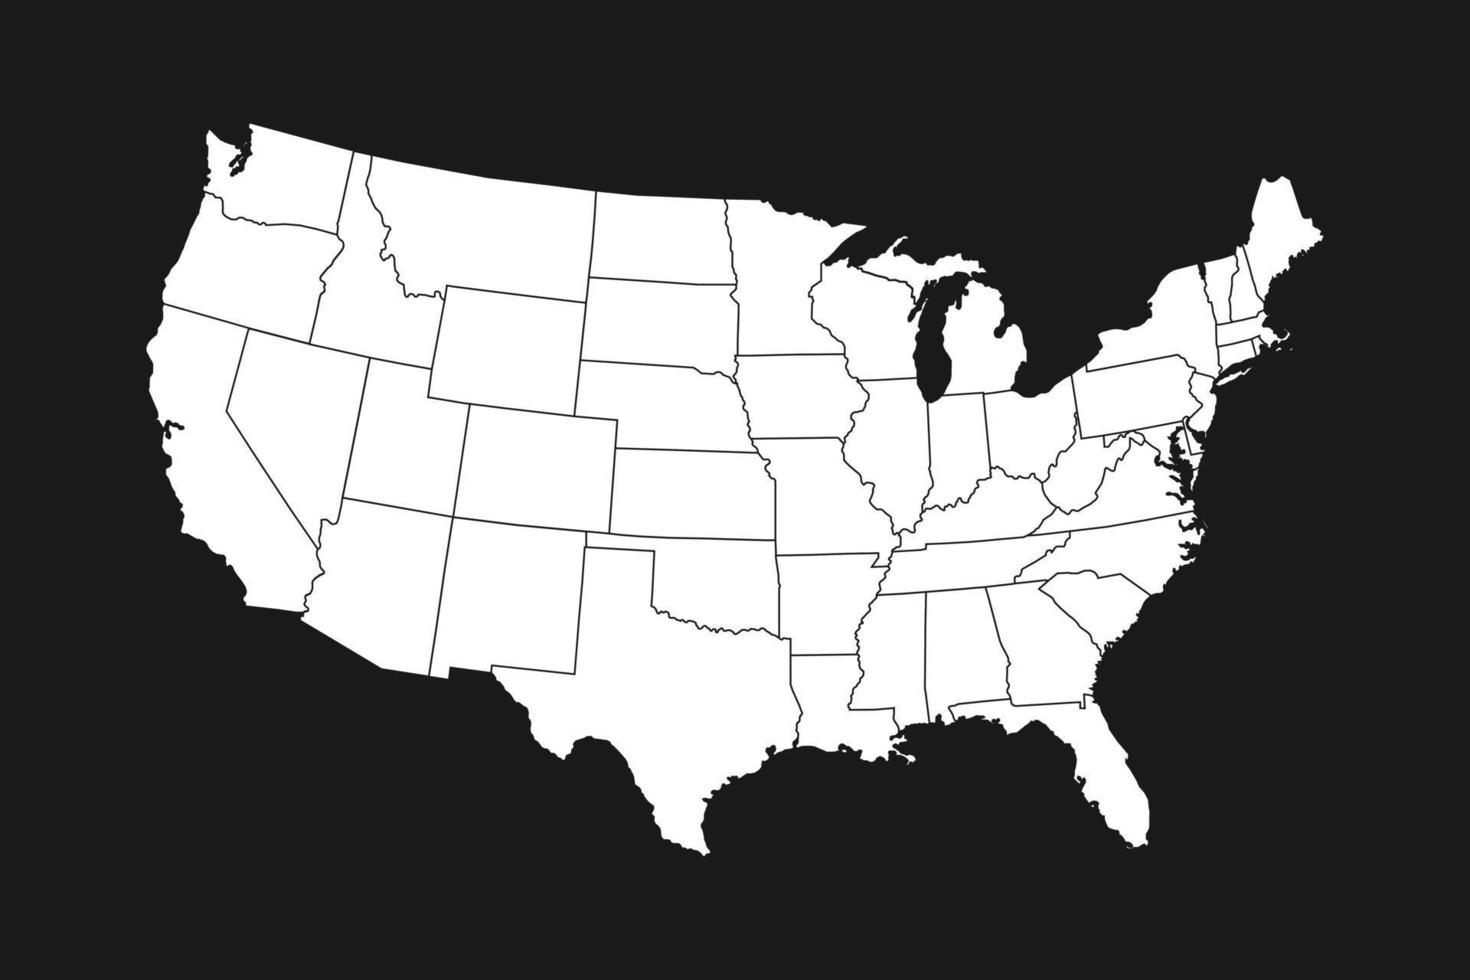 hochdetaillierte karte der usa mit staatengrenzen auf schwarzem backgrond vektor